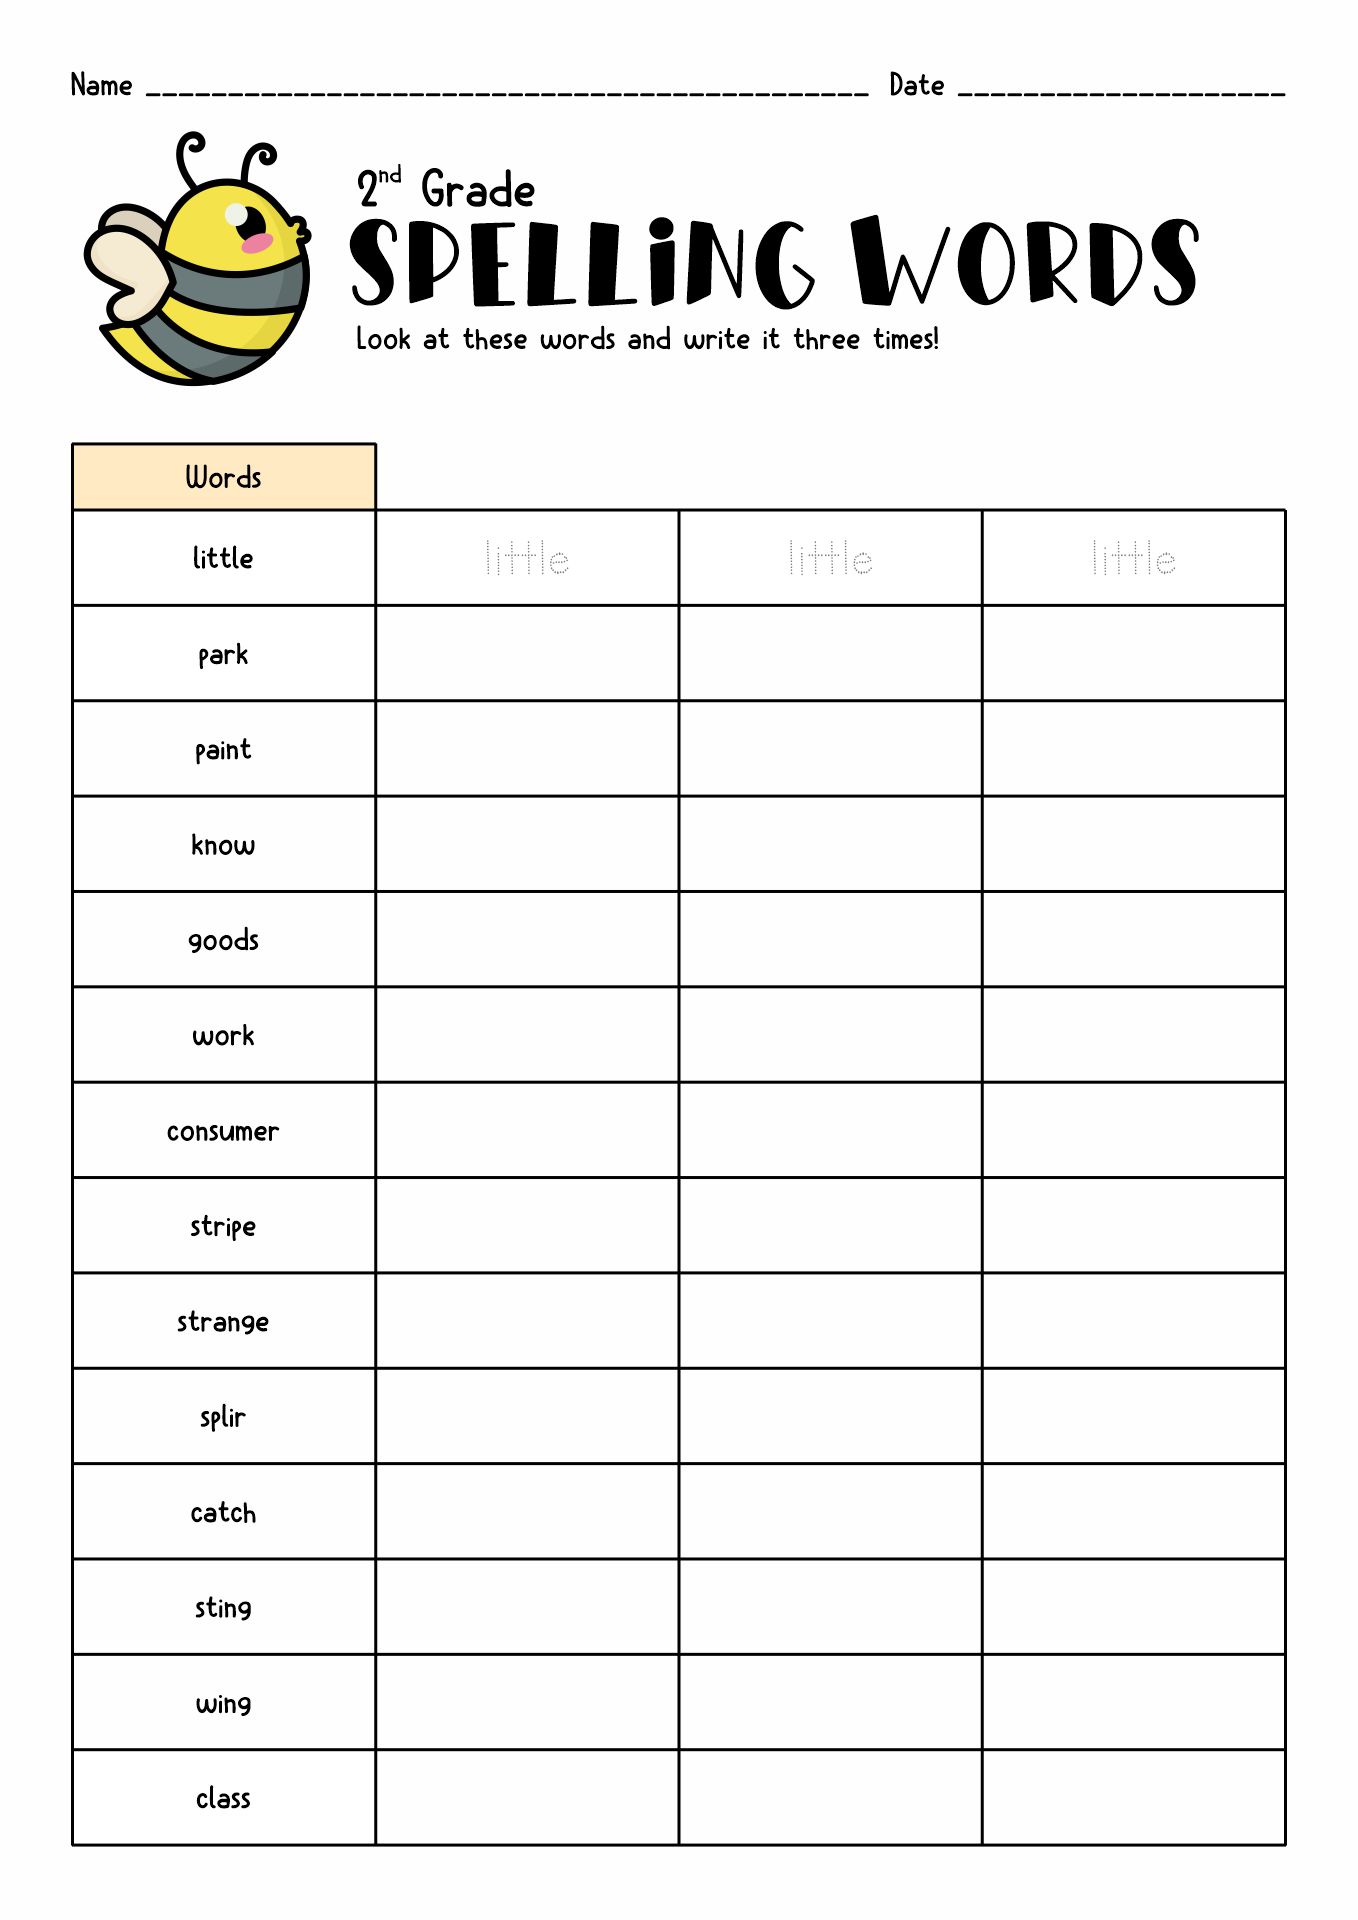 Spelling Words Worksheet